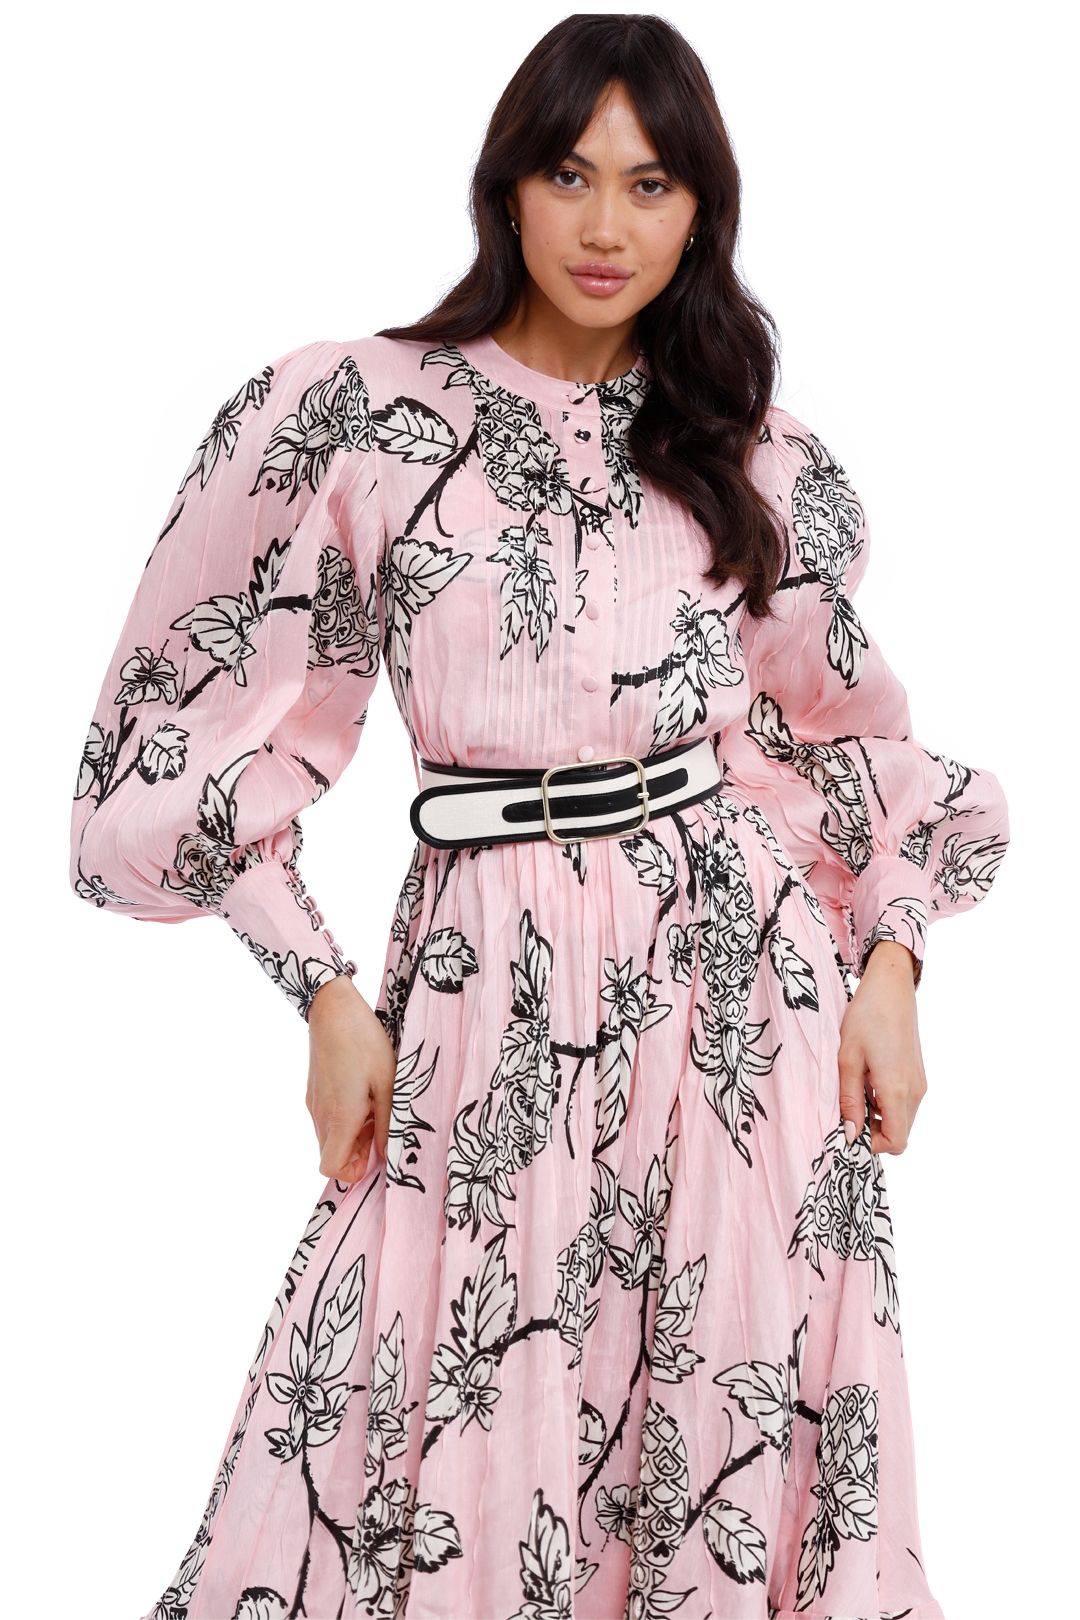 LEO LIN Pina Silk Linen Dress Pink floral